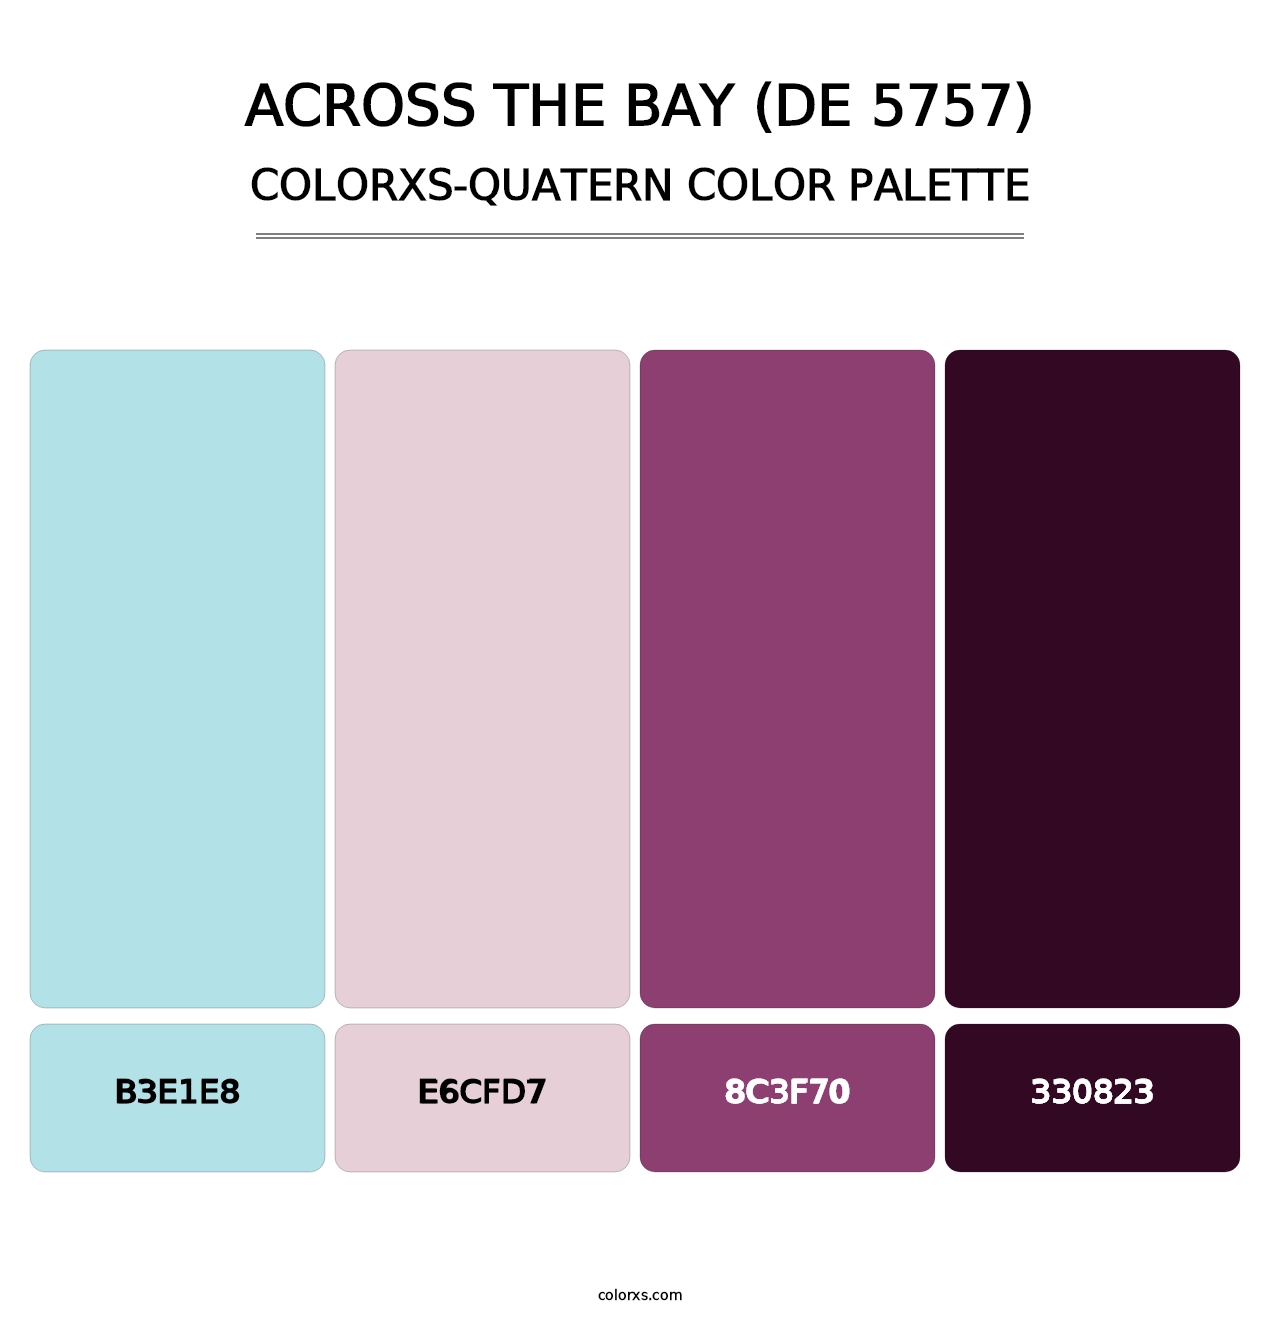 Across the Bay (DE 5757) - Colorxs Quatern Palette